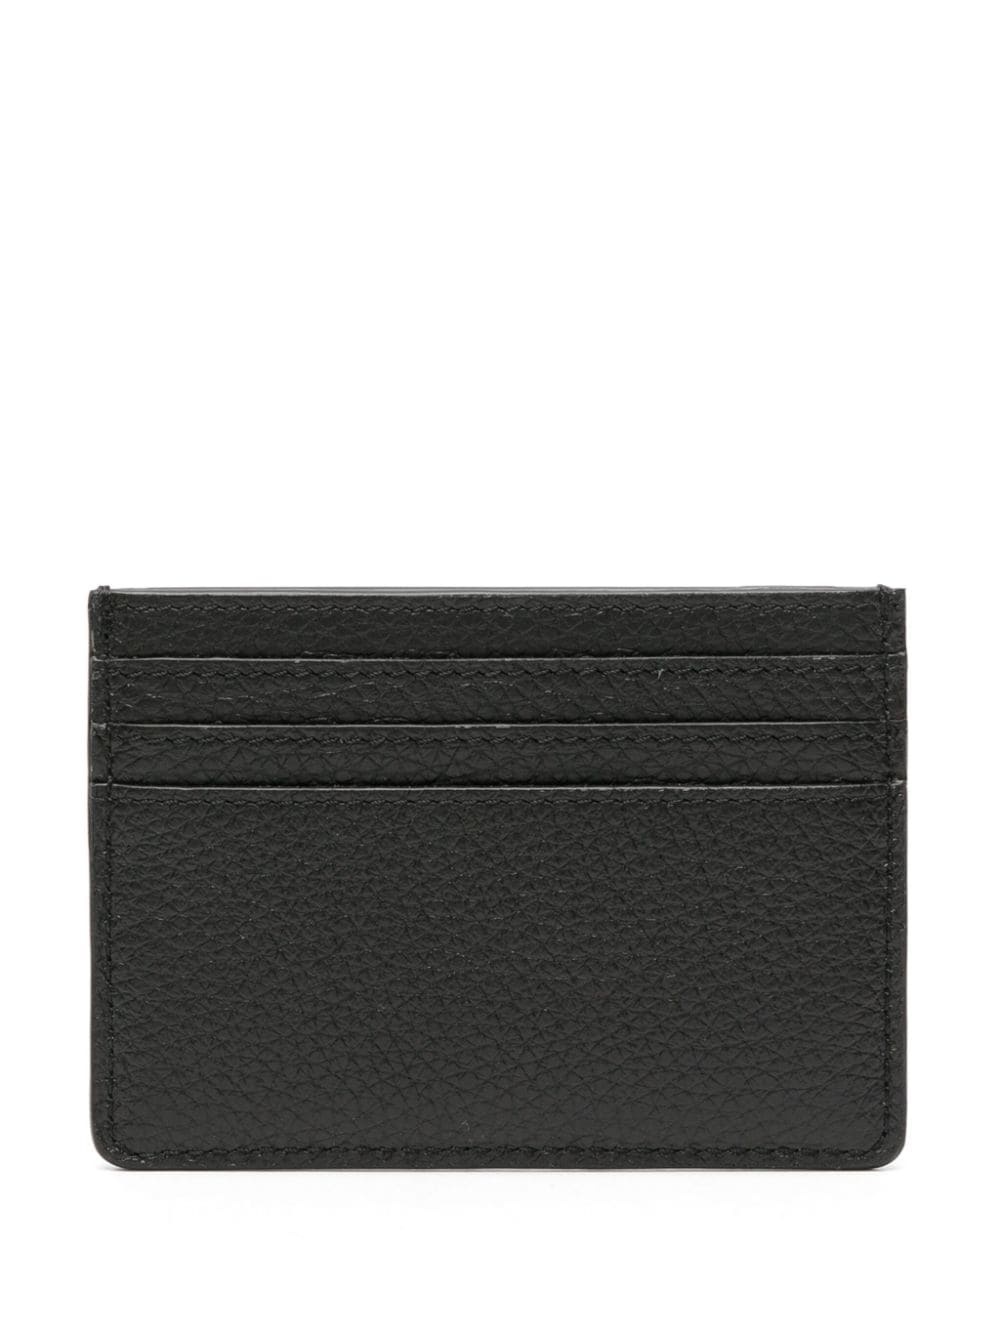 VLogo Signature leather cardholder - 2